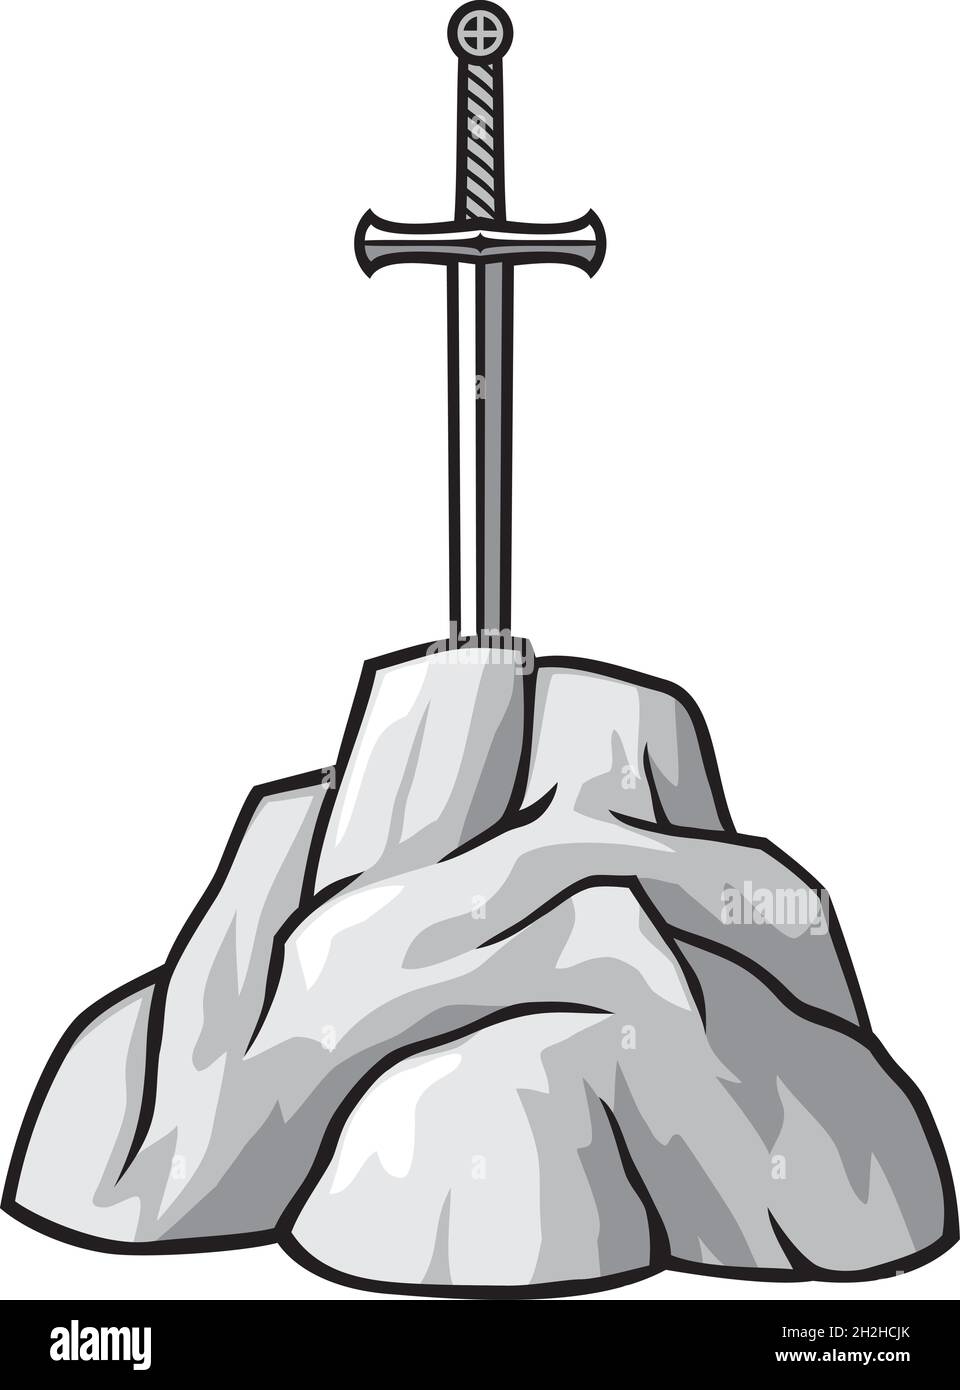 L'épée du roi Arthur Excalibur dans l'illustration du vecteur de pierre Illustration de Vecteur